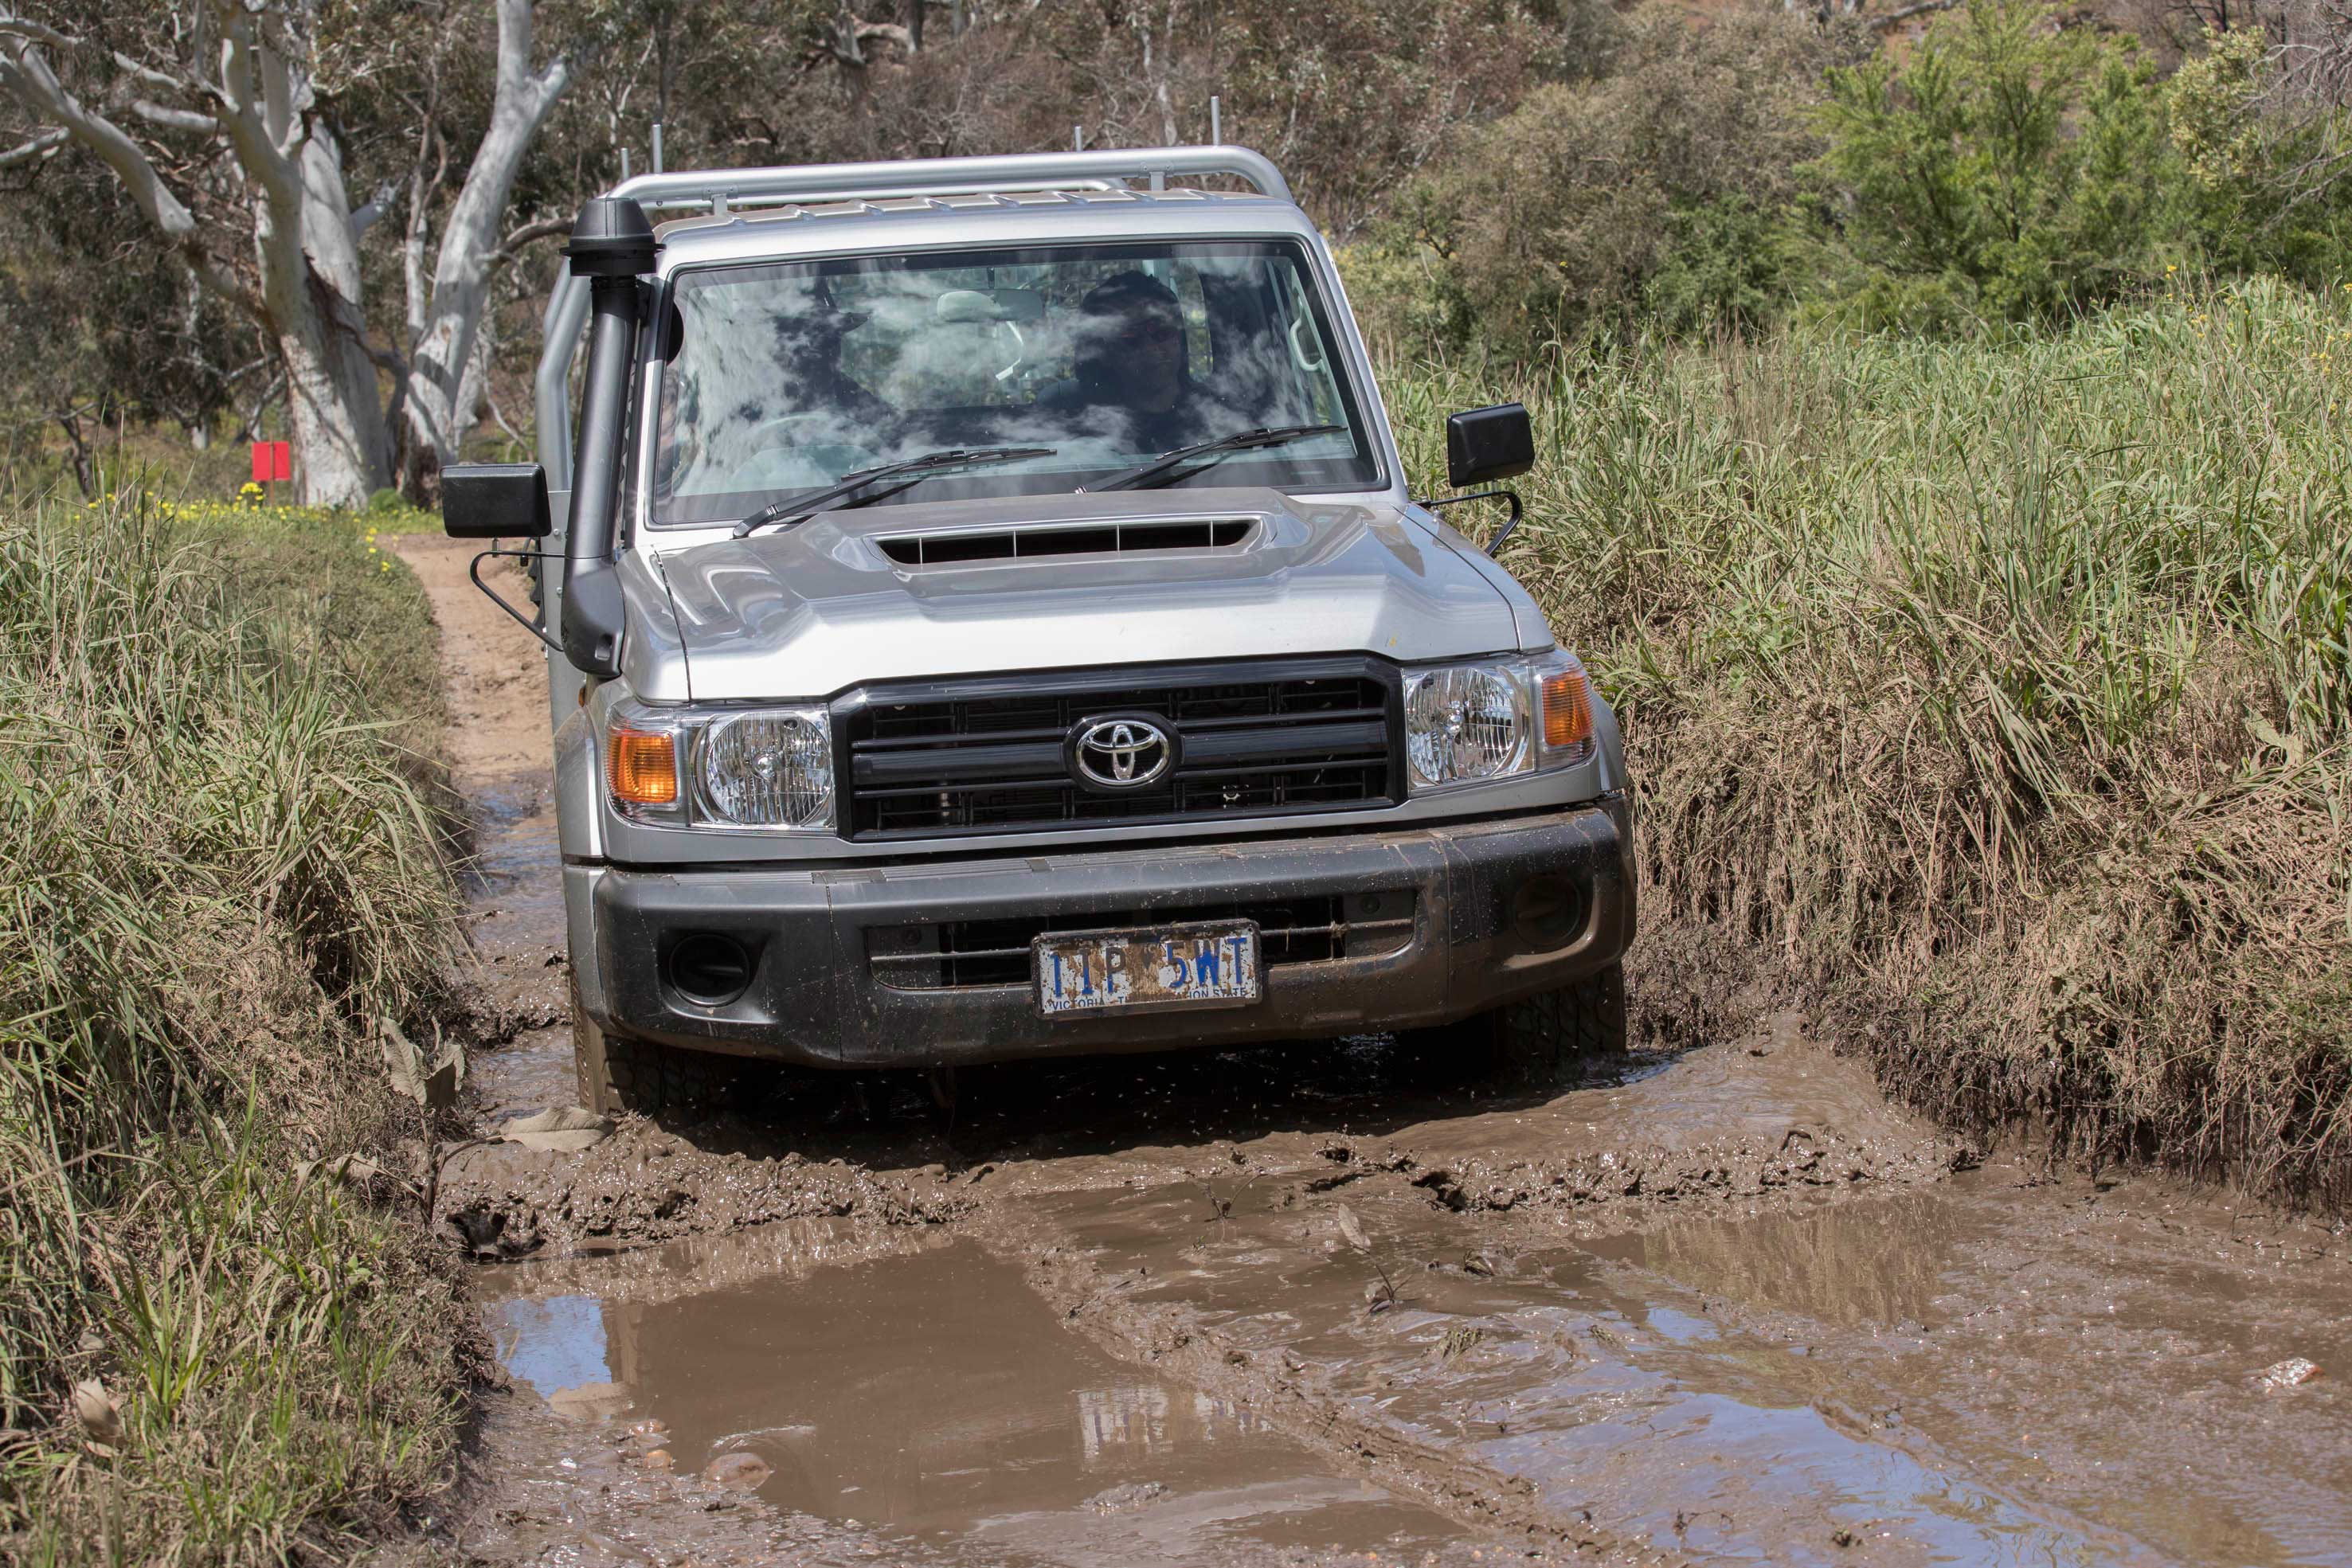 Toyota Landcruiser 70 series wading through mud